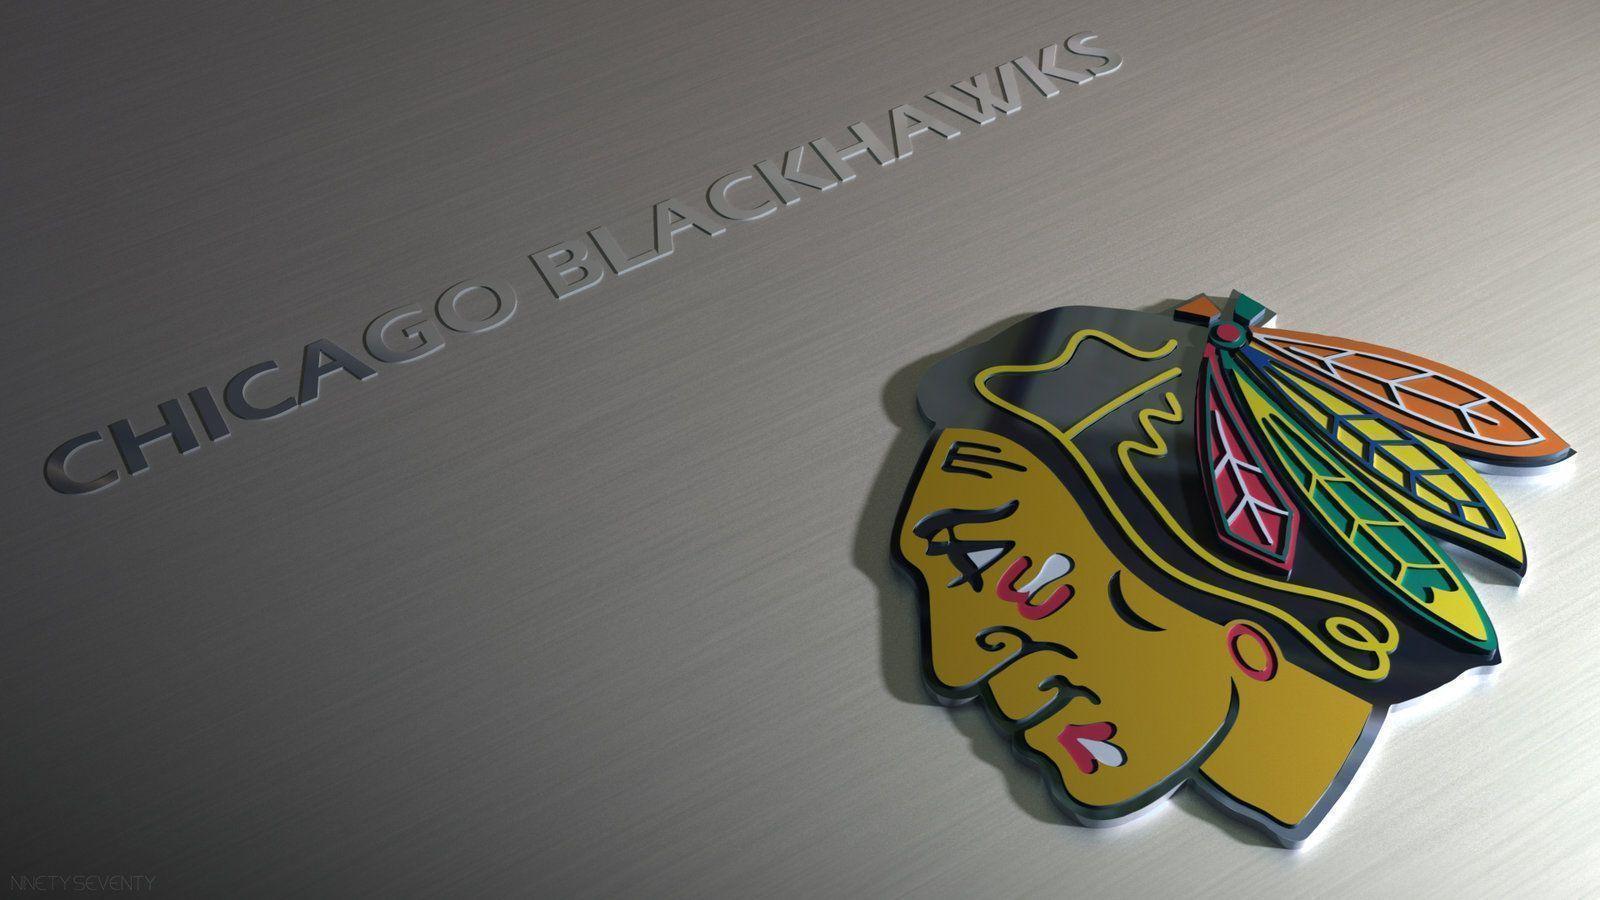 Chicago Blackhawks Logo Wallpaper 07. hdwallpaper